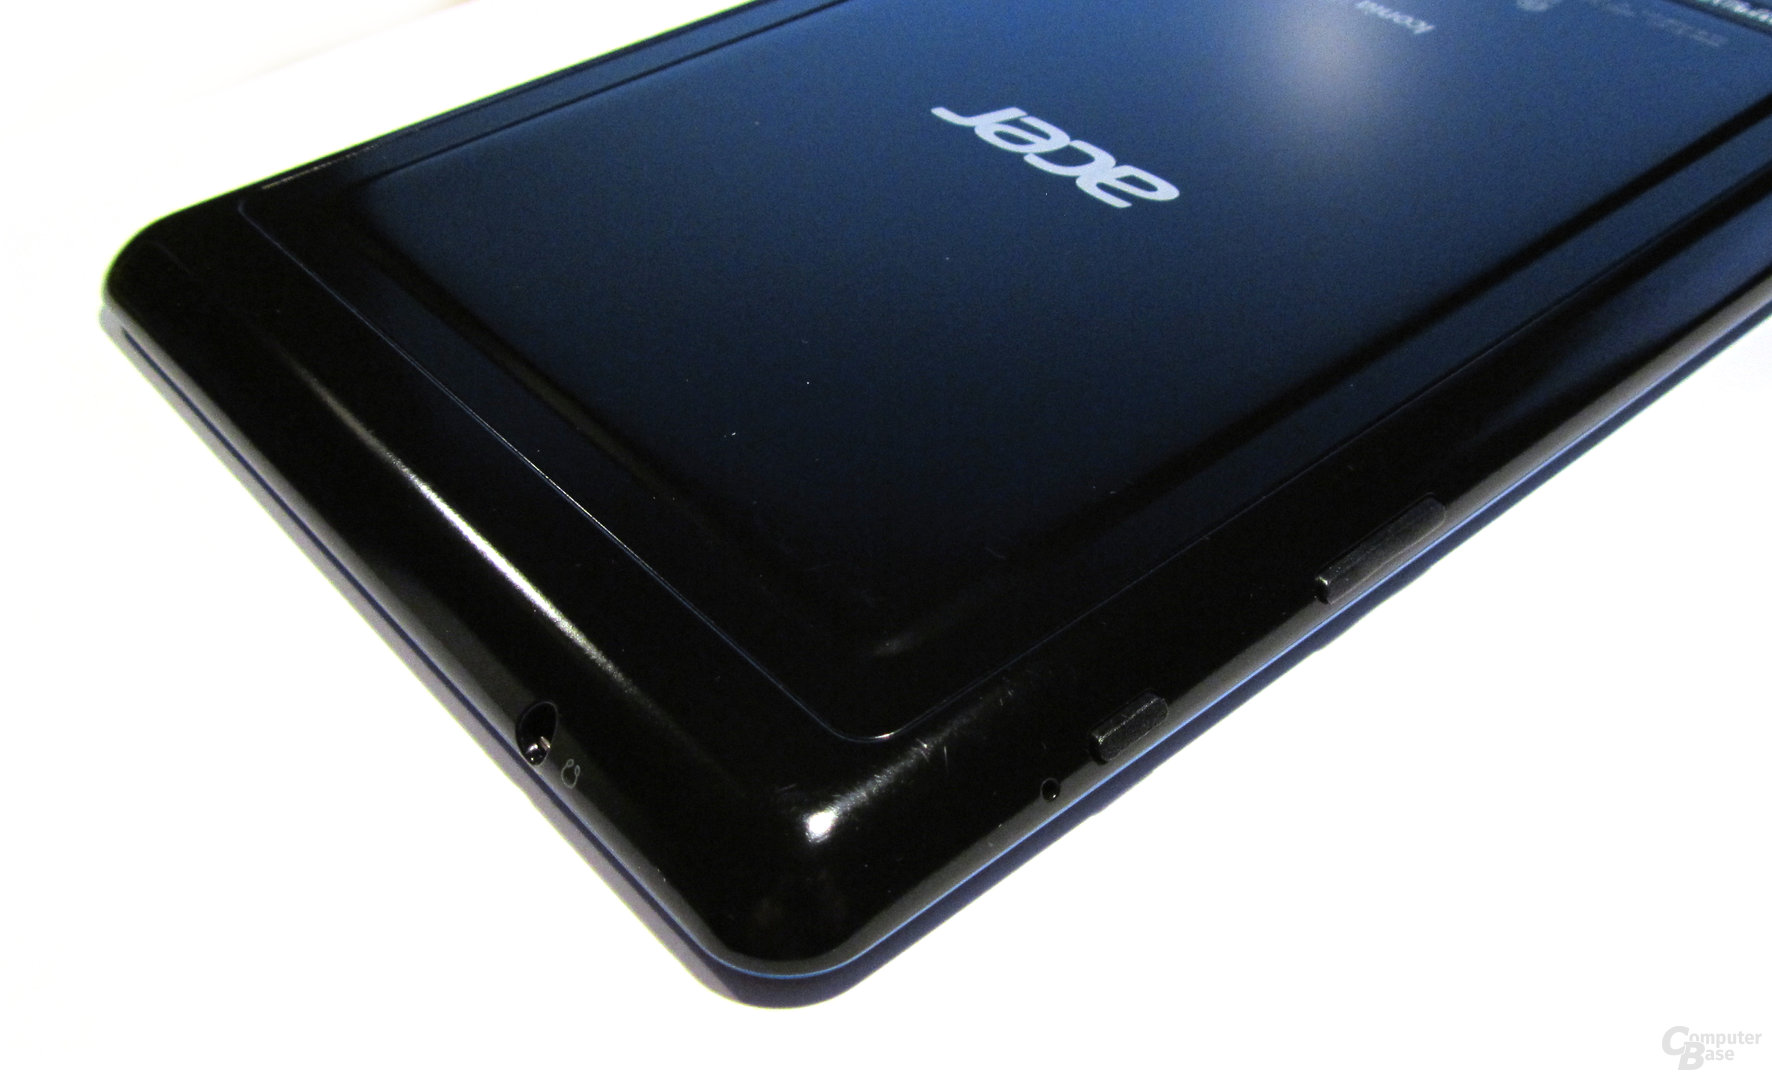 Acer Iconia Tab B1